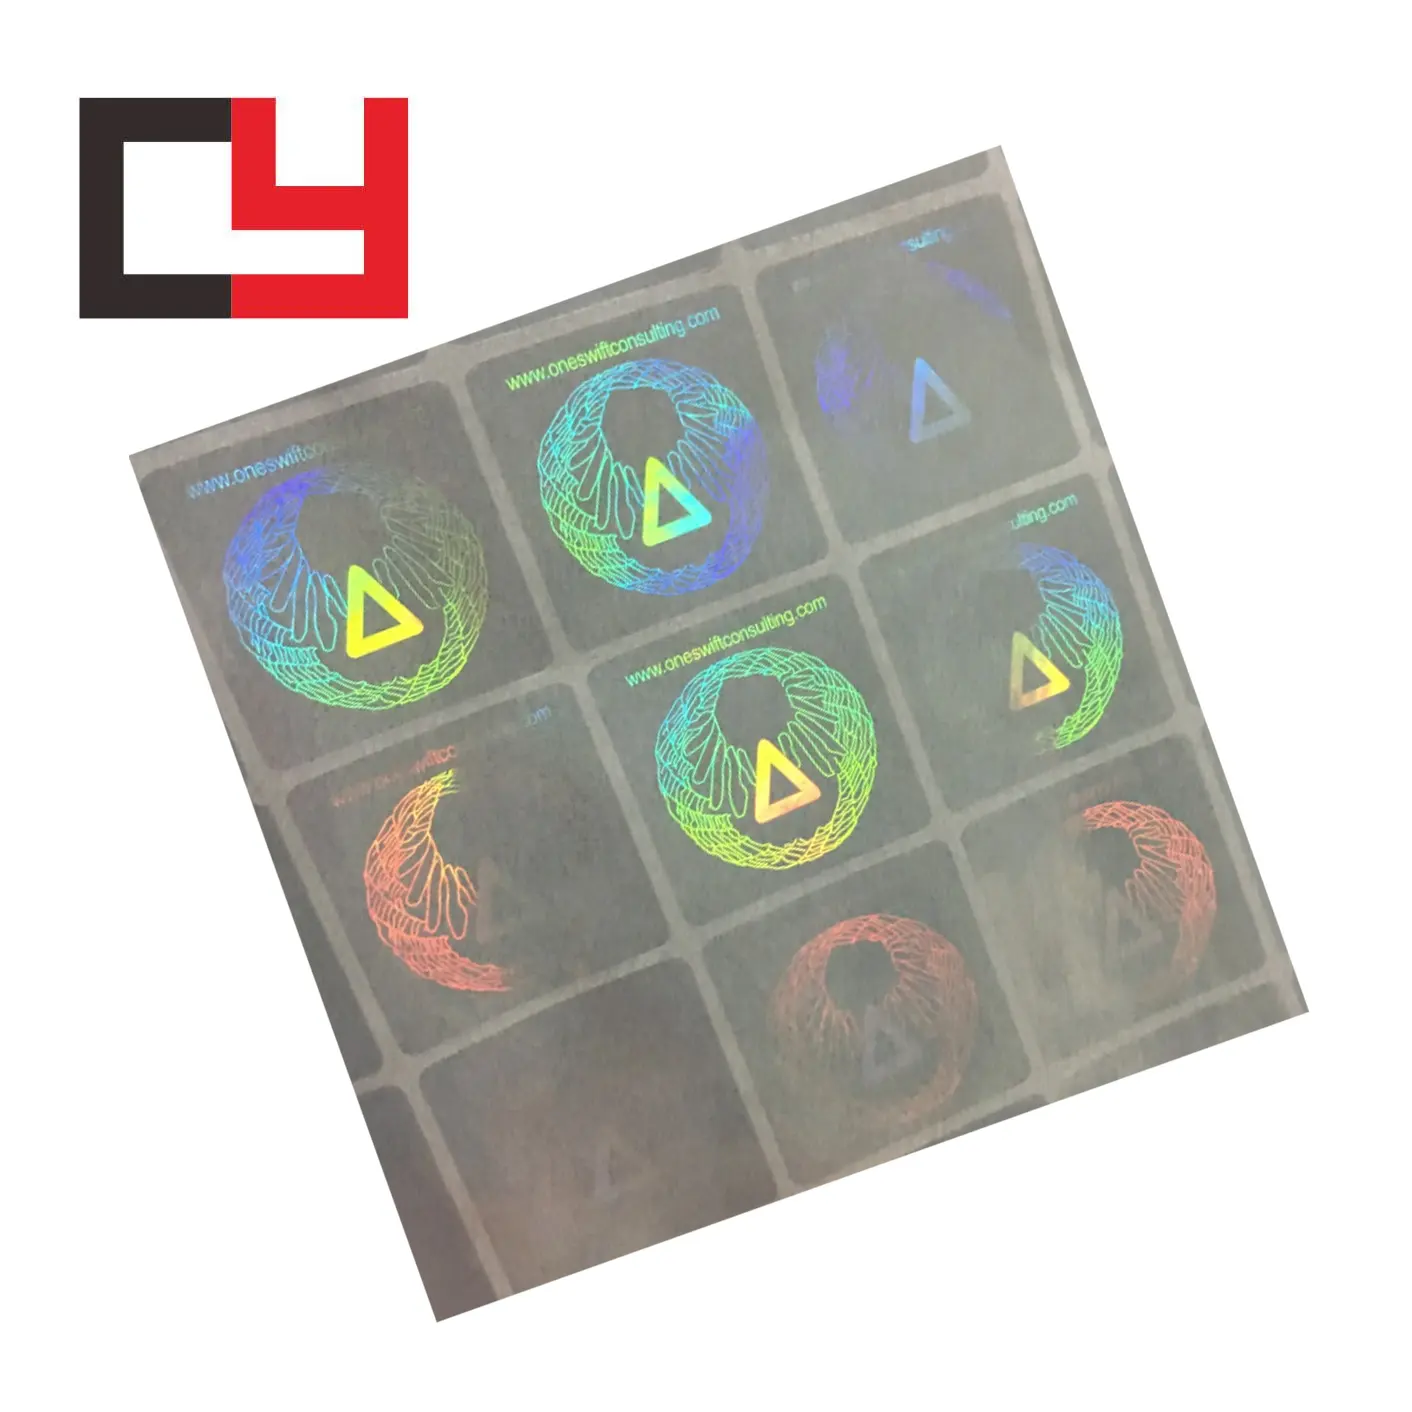 Adesivo holograma 3d transparente, anti etiqueta de falsificação, à prova de inviolação